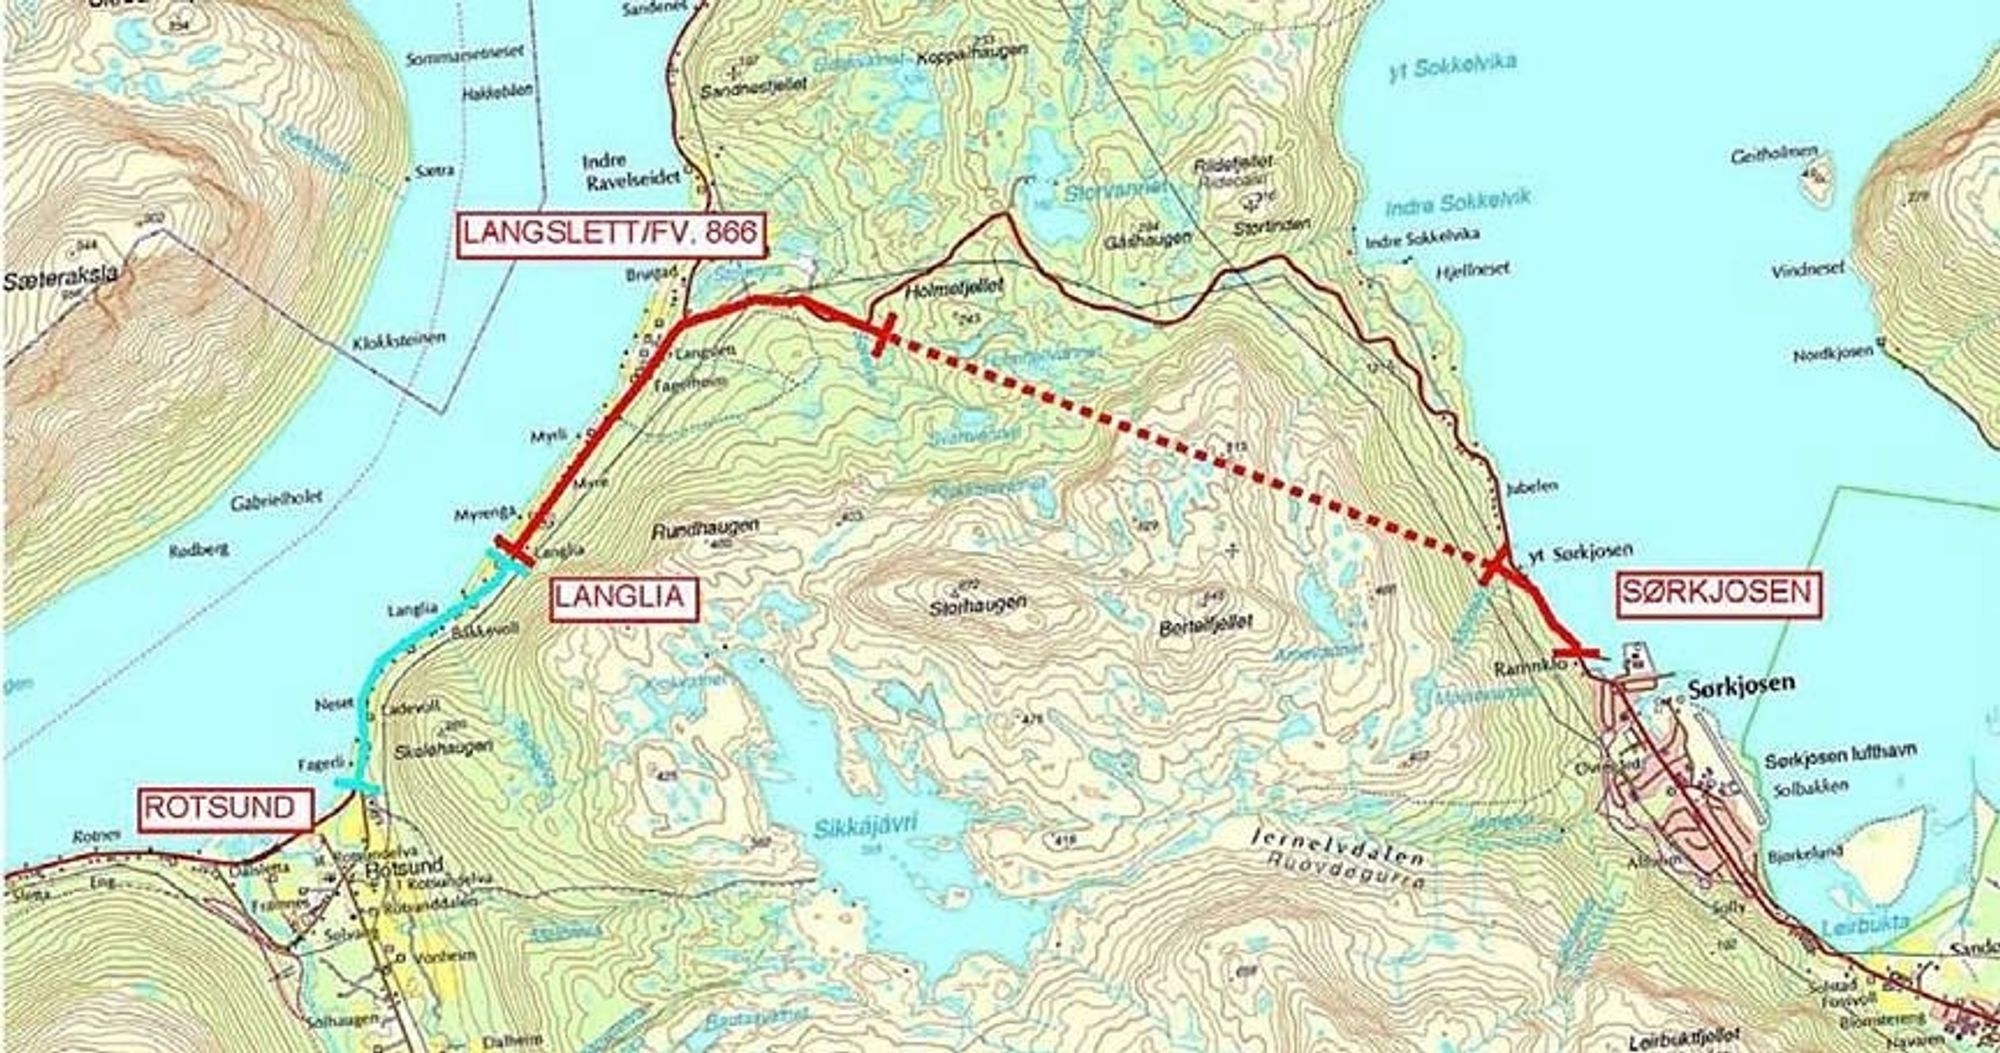 Tunnelen gjennom Sørkjosfjellet er ferdigsprengt. Interessen for å fylle den med elektro- og SRO-installasjoner er stor, og konkurransen er jevn.